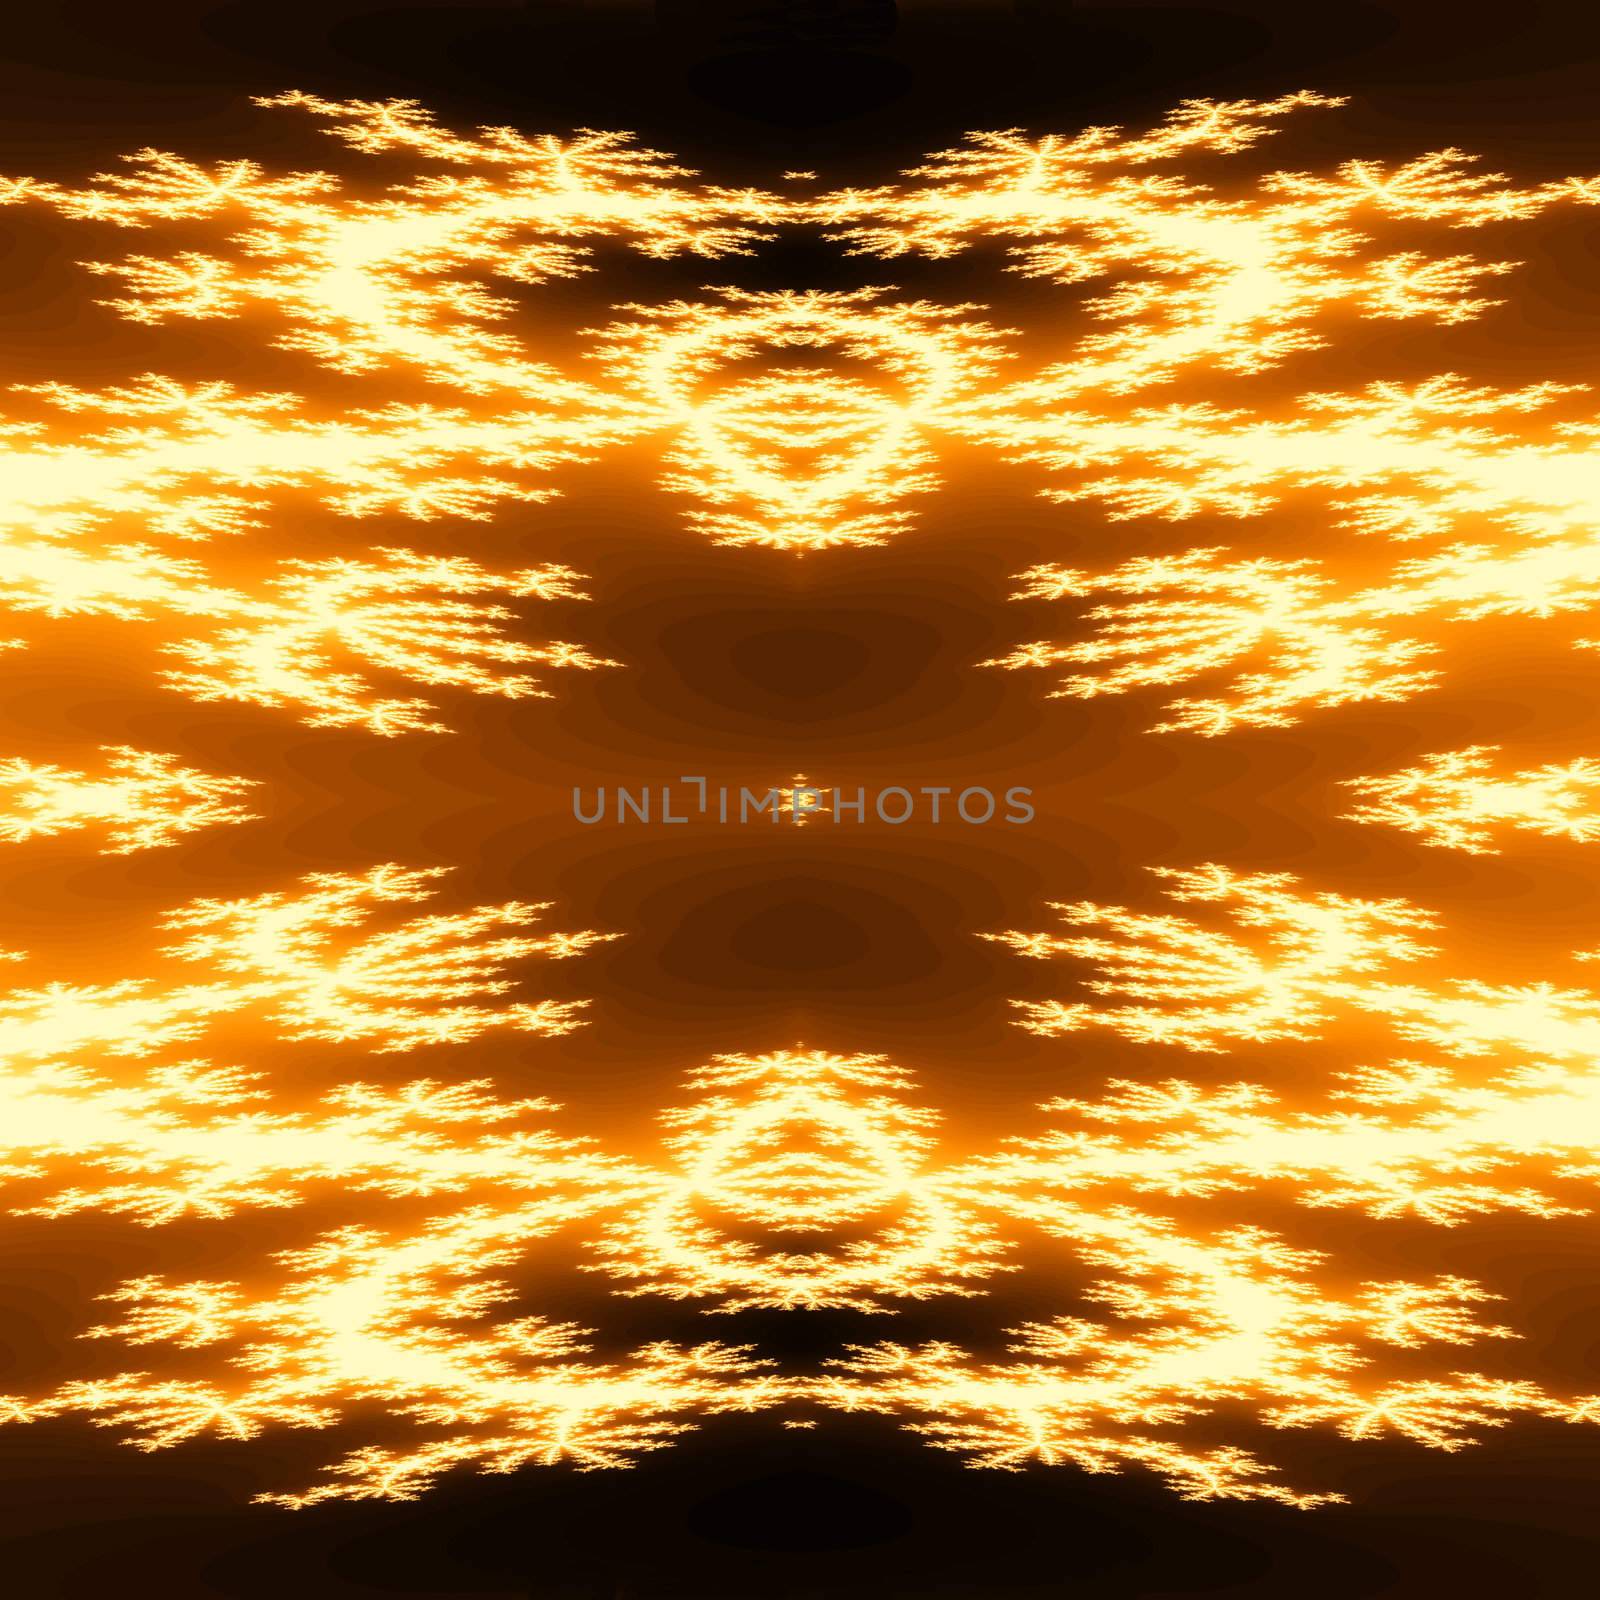 abstract fractal background in golden tones over black, based on the Julia fractal